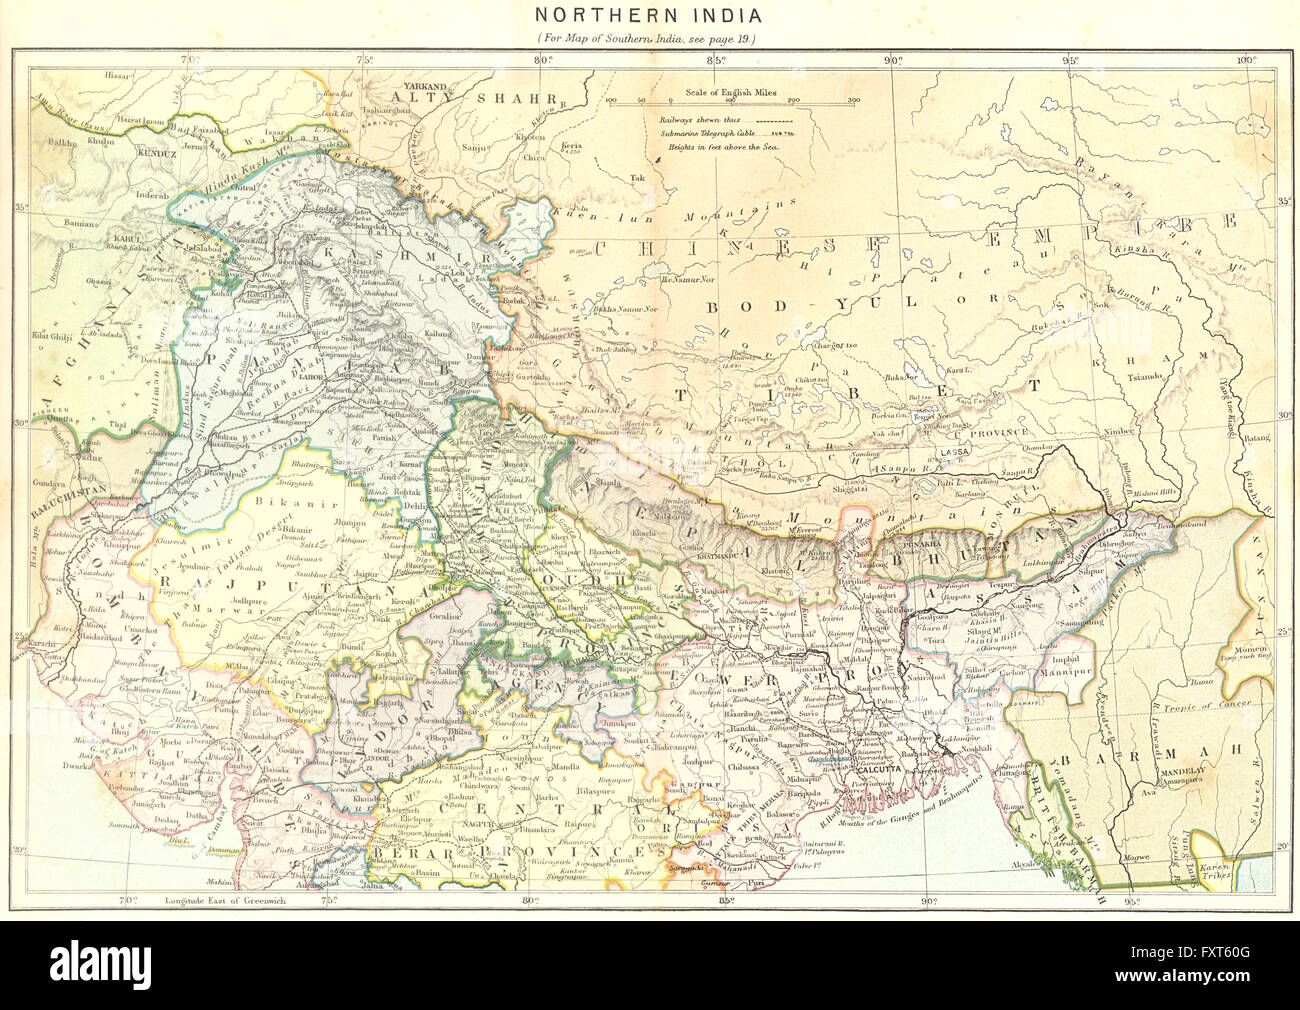 INDIA: North, c1885 antique map Stock Photo